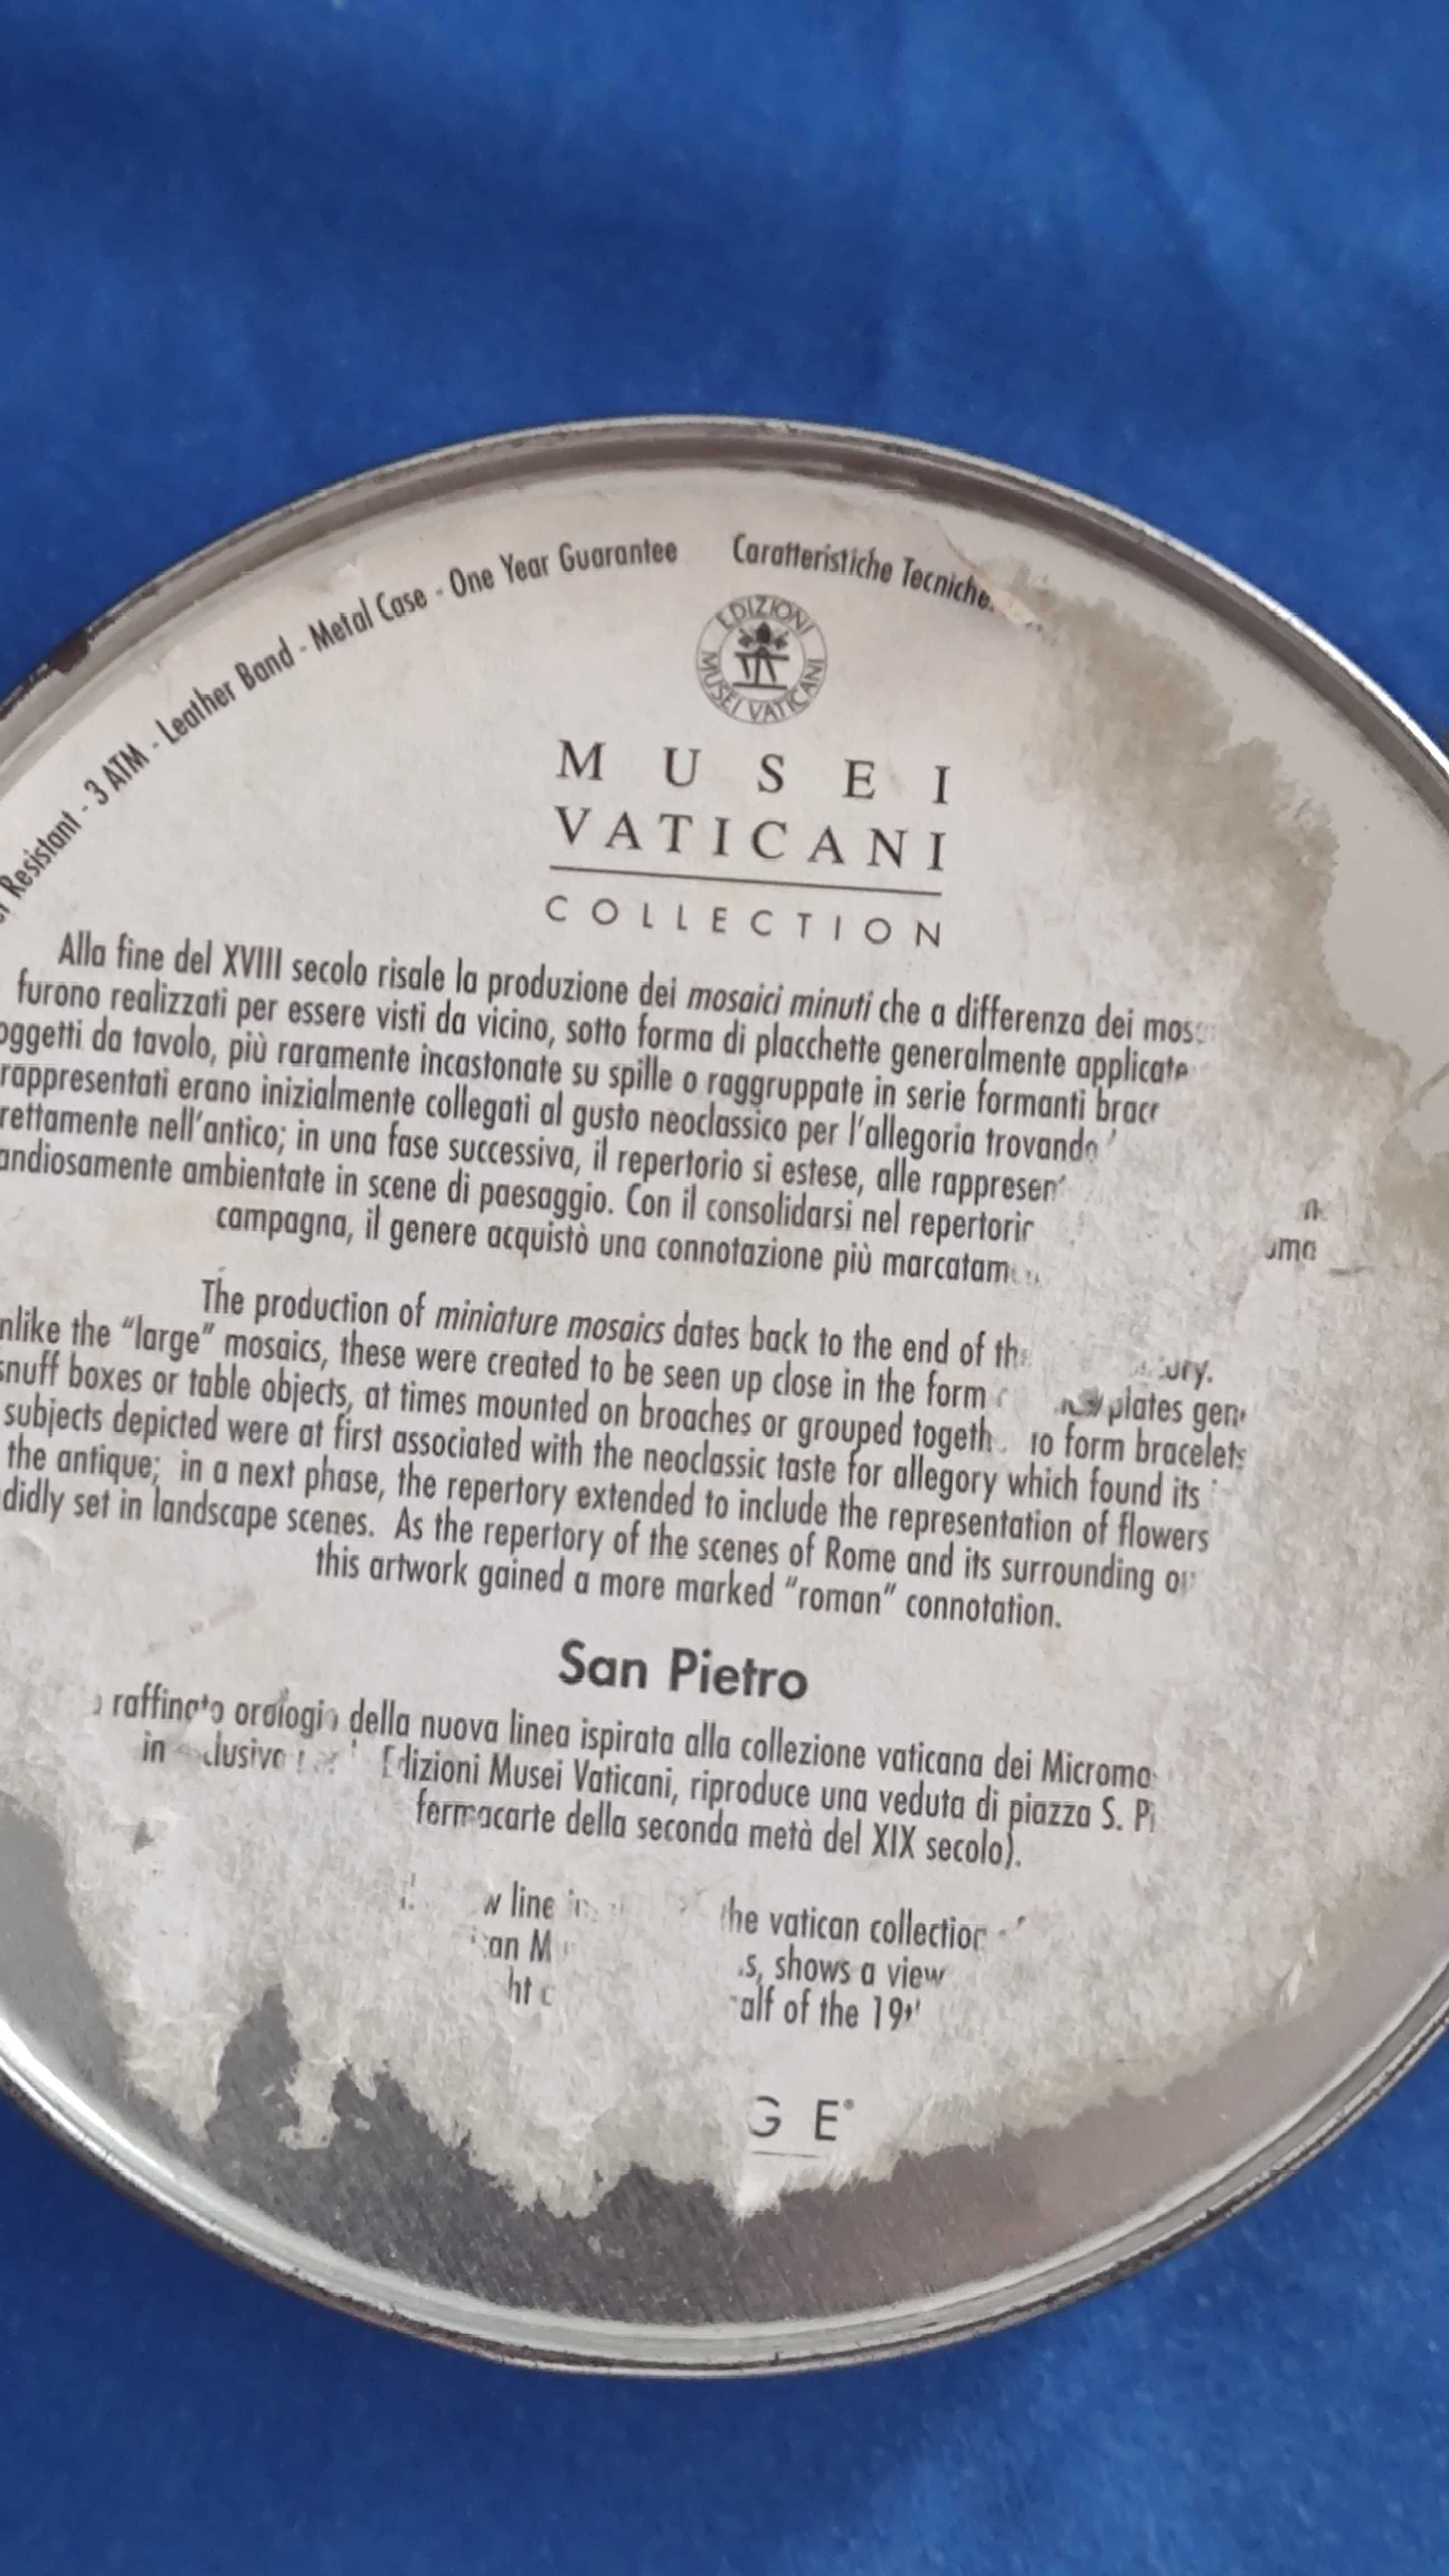 Cutie de stocare, imagine Vatican